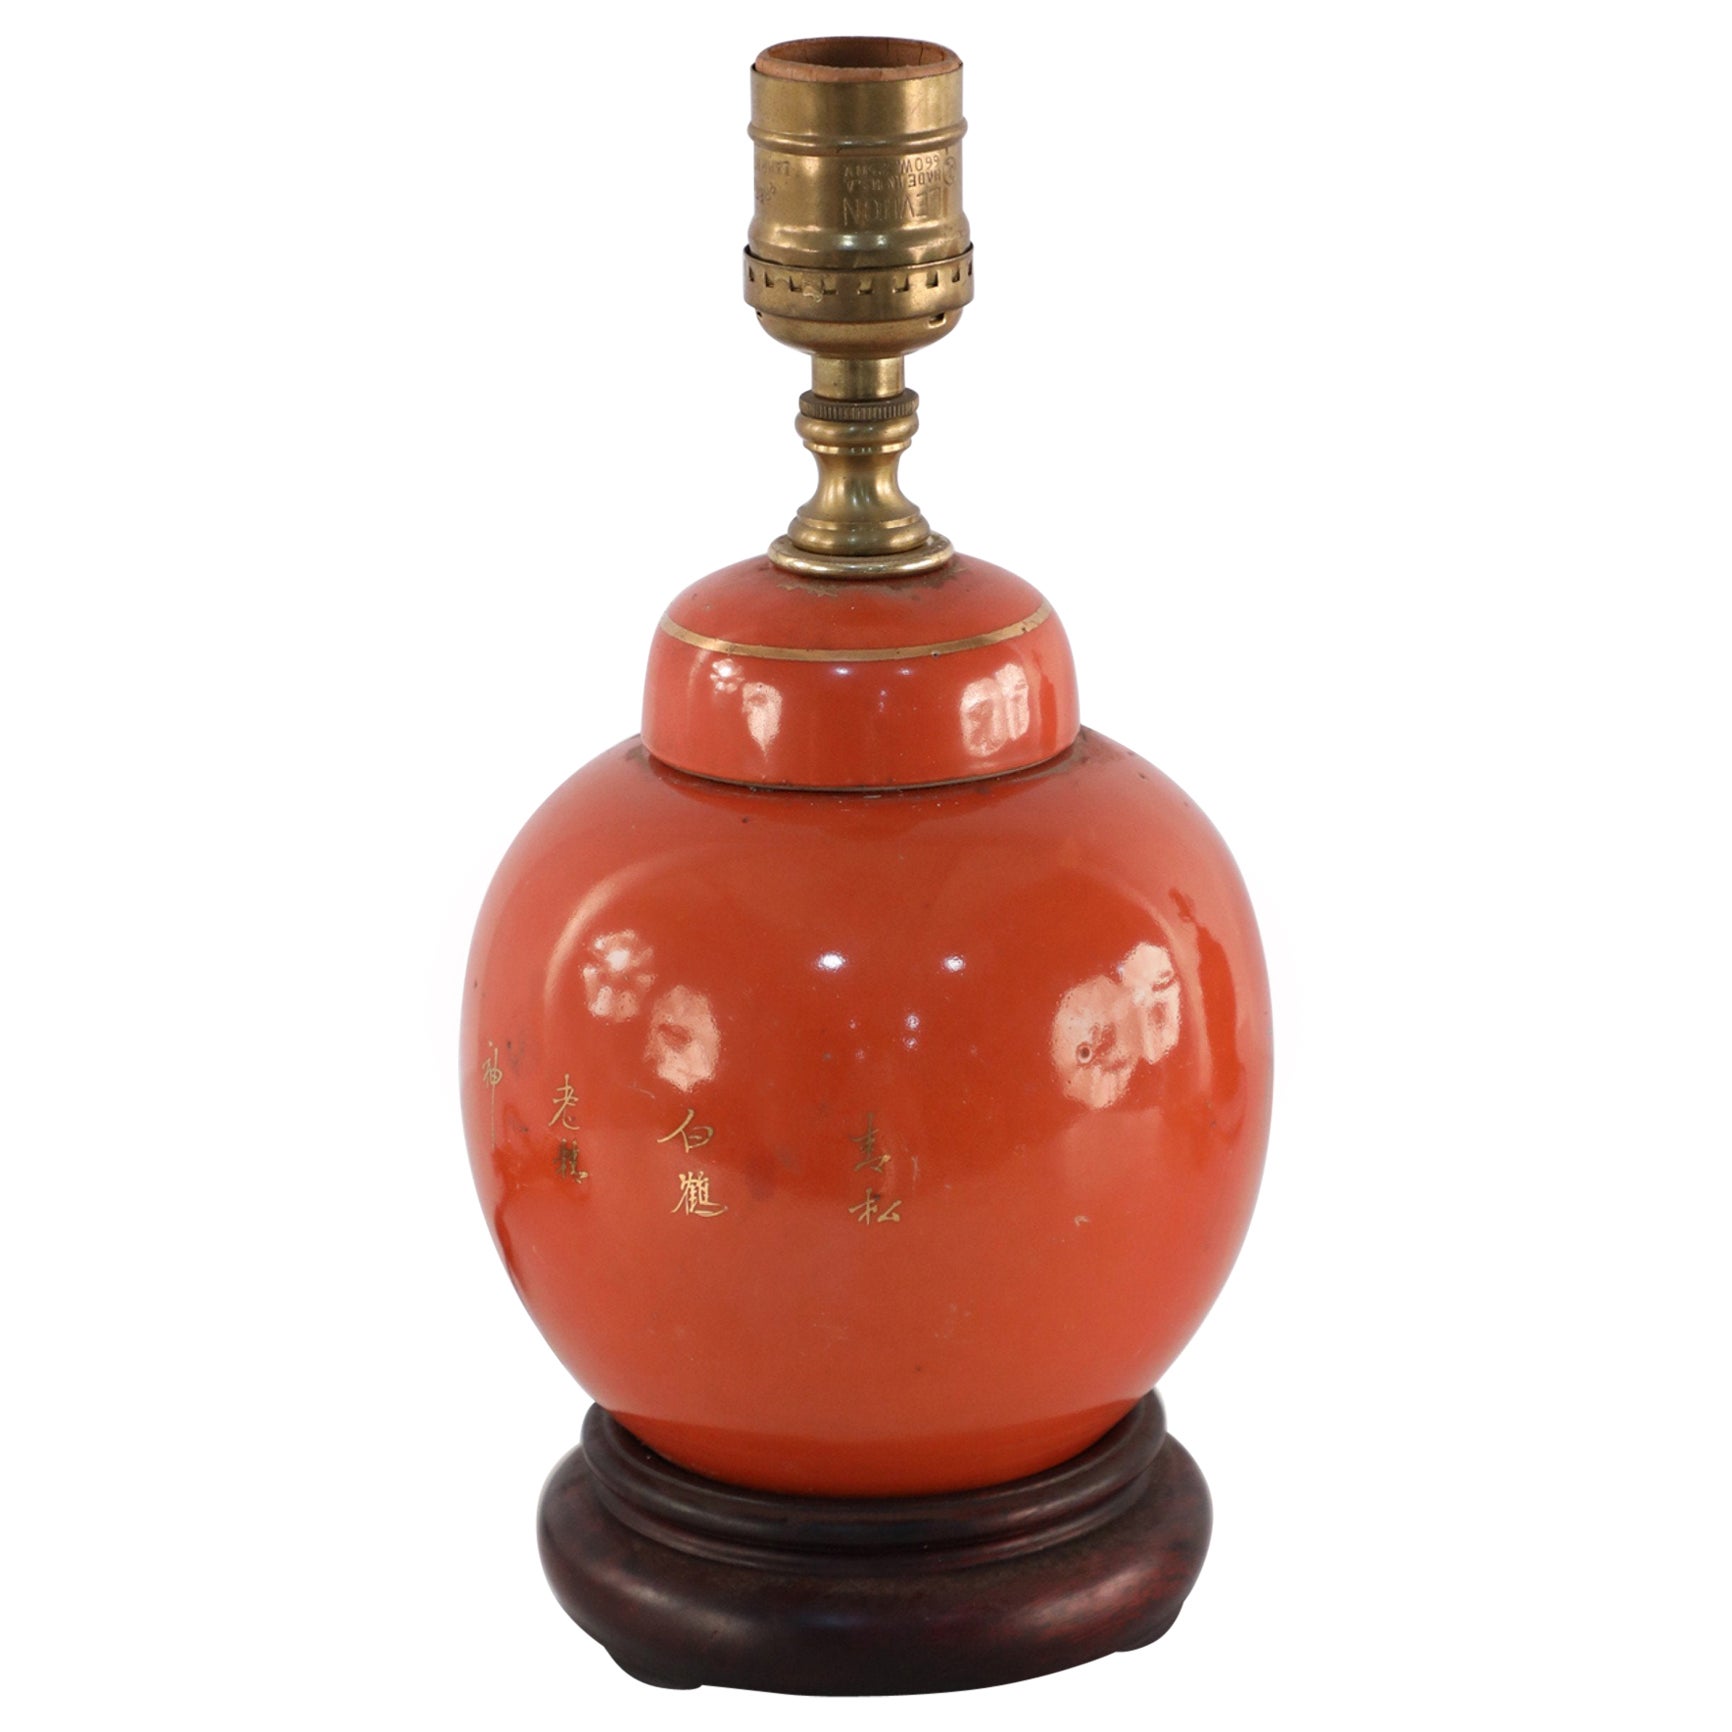 Ancienne lampe de table en porcelaine de Chine orange et or avec design Crane